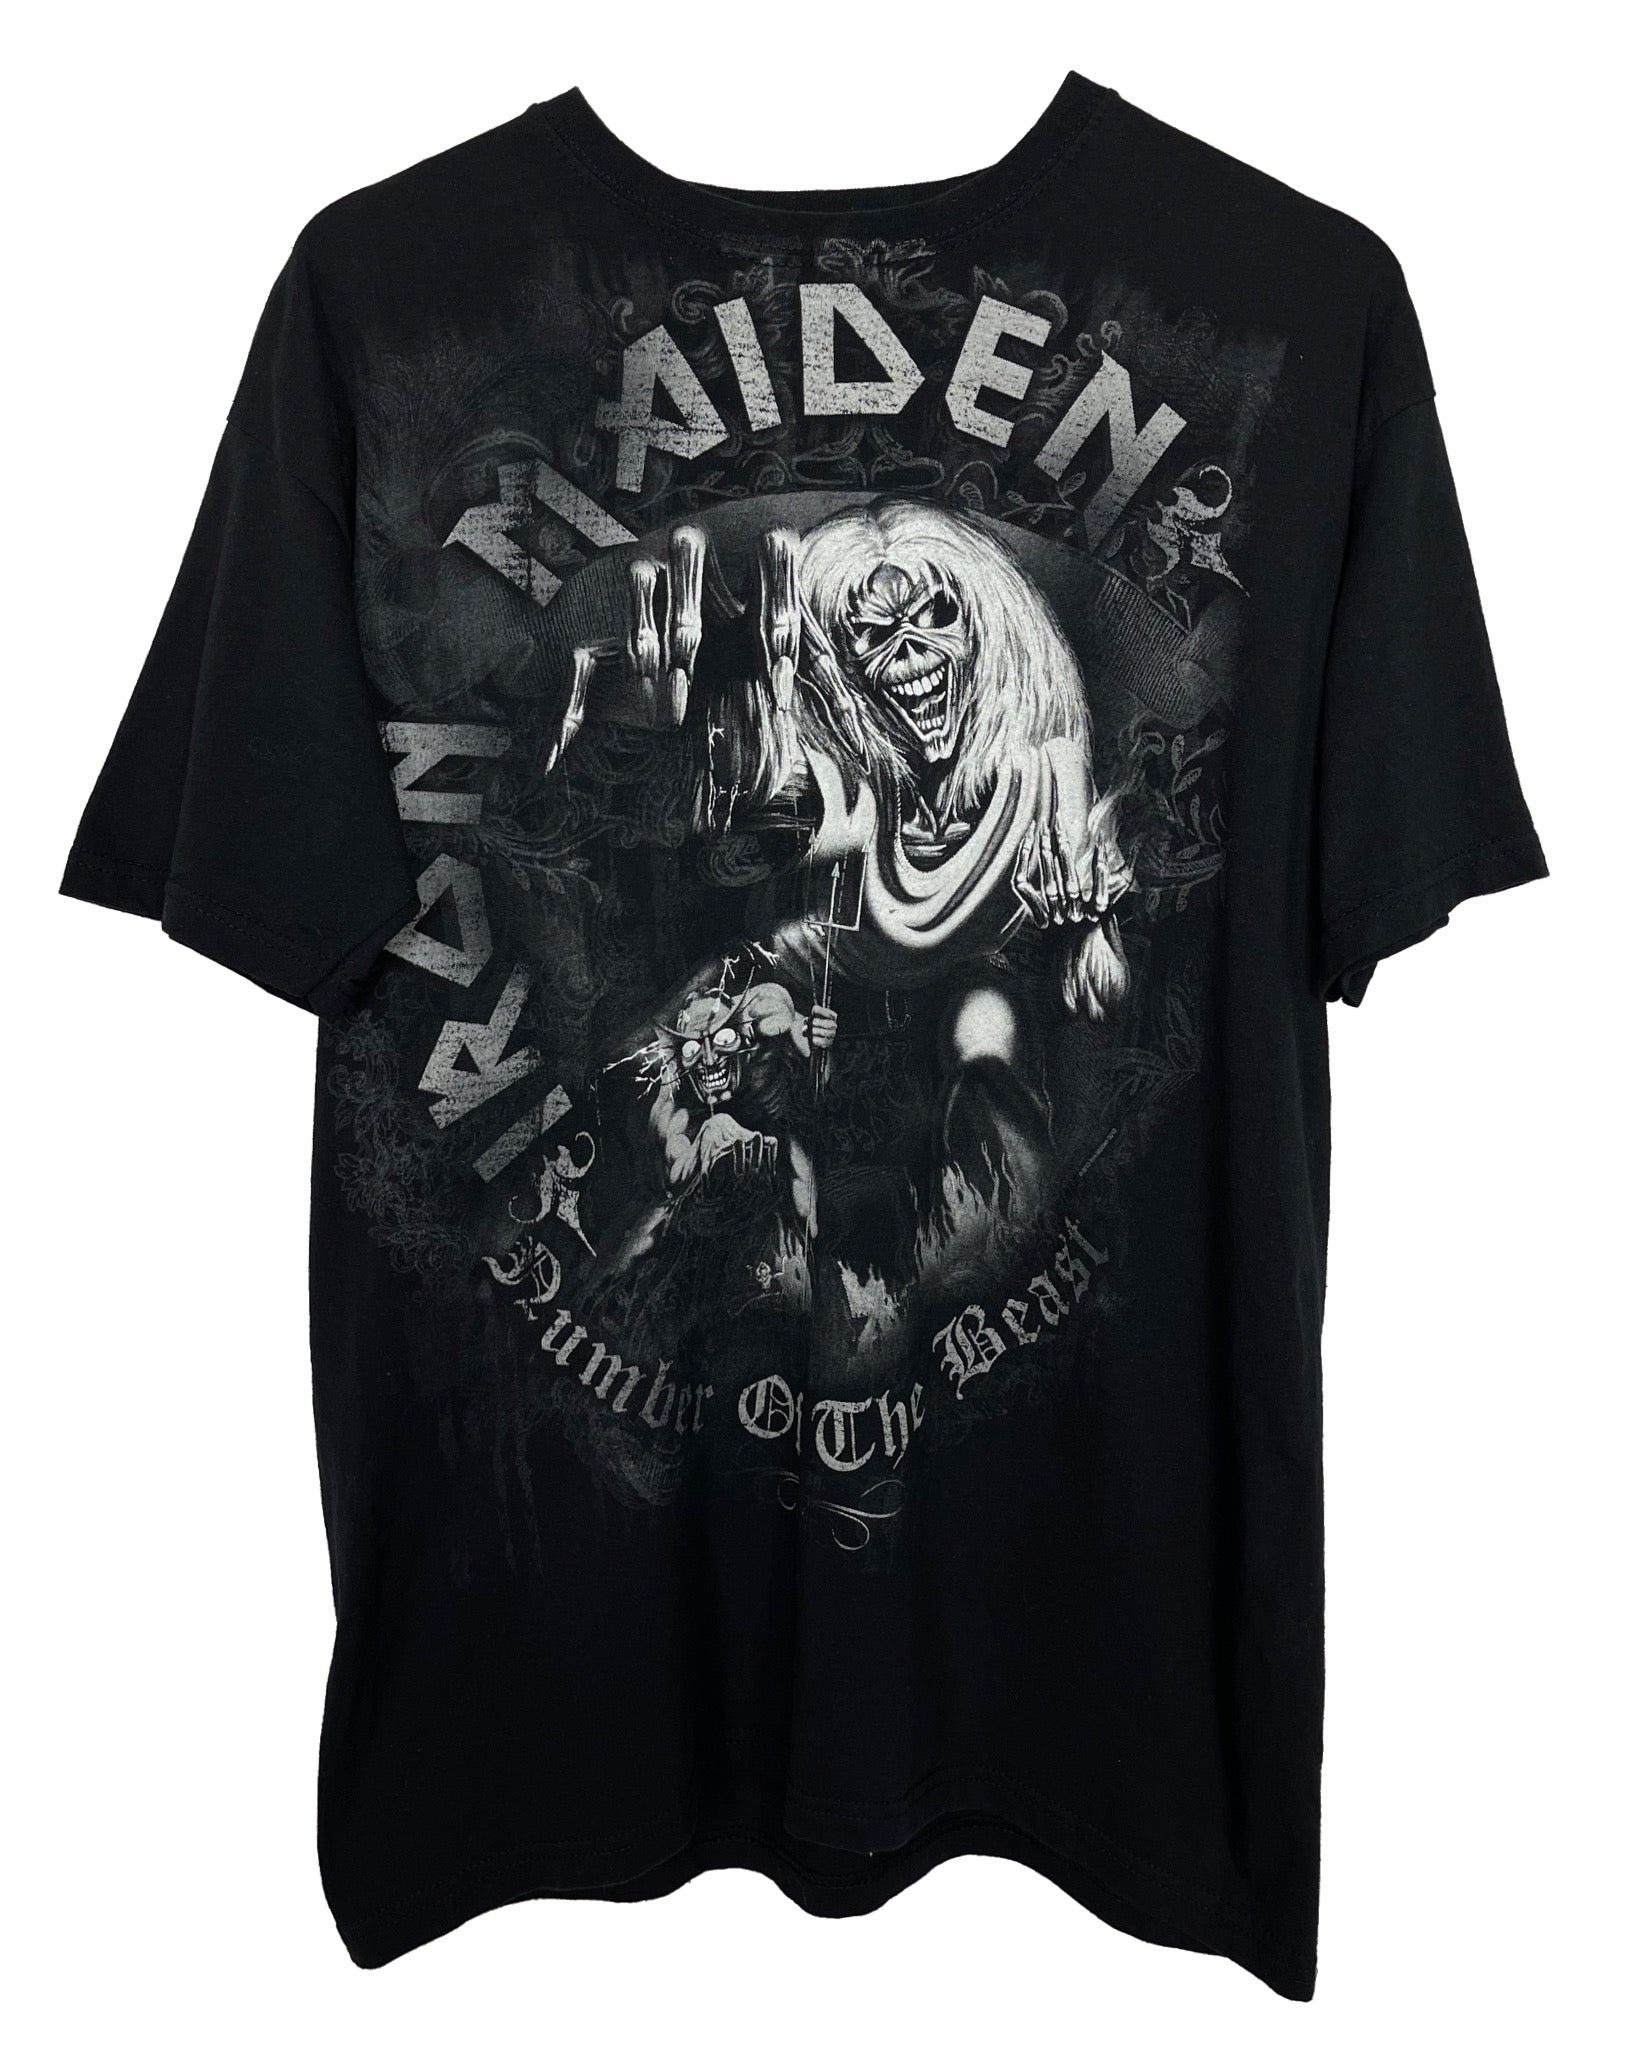  T-shirt Gildan T-shirt - Iron Maiden - M - PLOMOSTORE